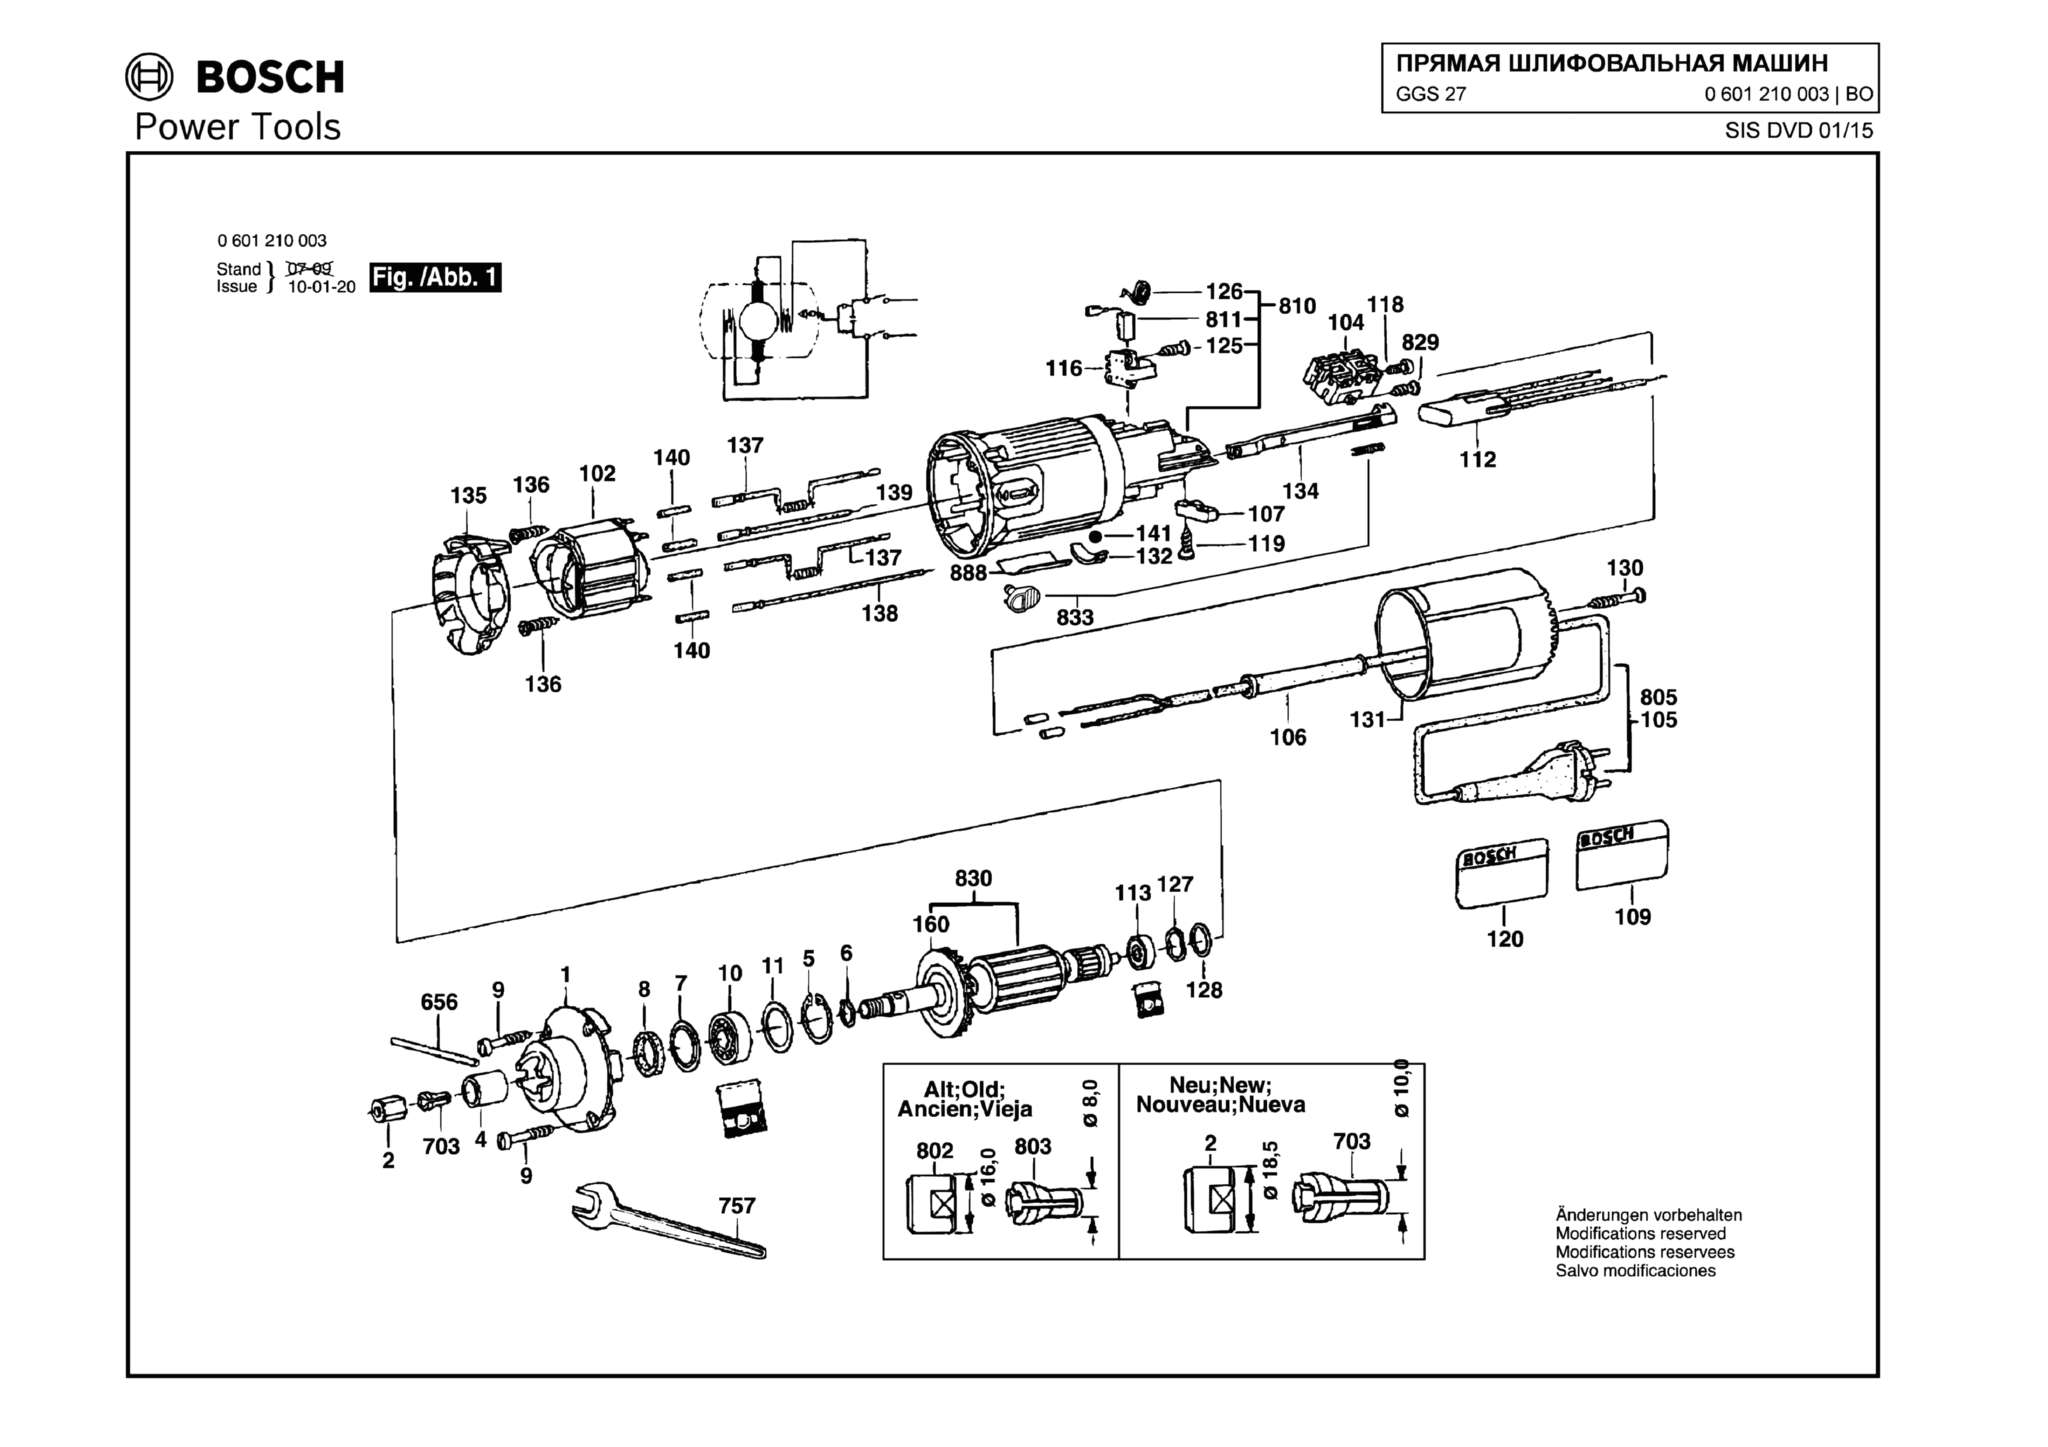 Запчасти, схема и деталировка Bosch GGS 27 (ТИП 0601210003)